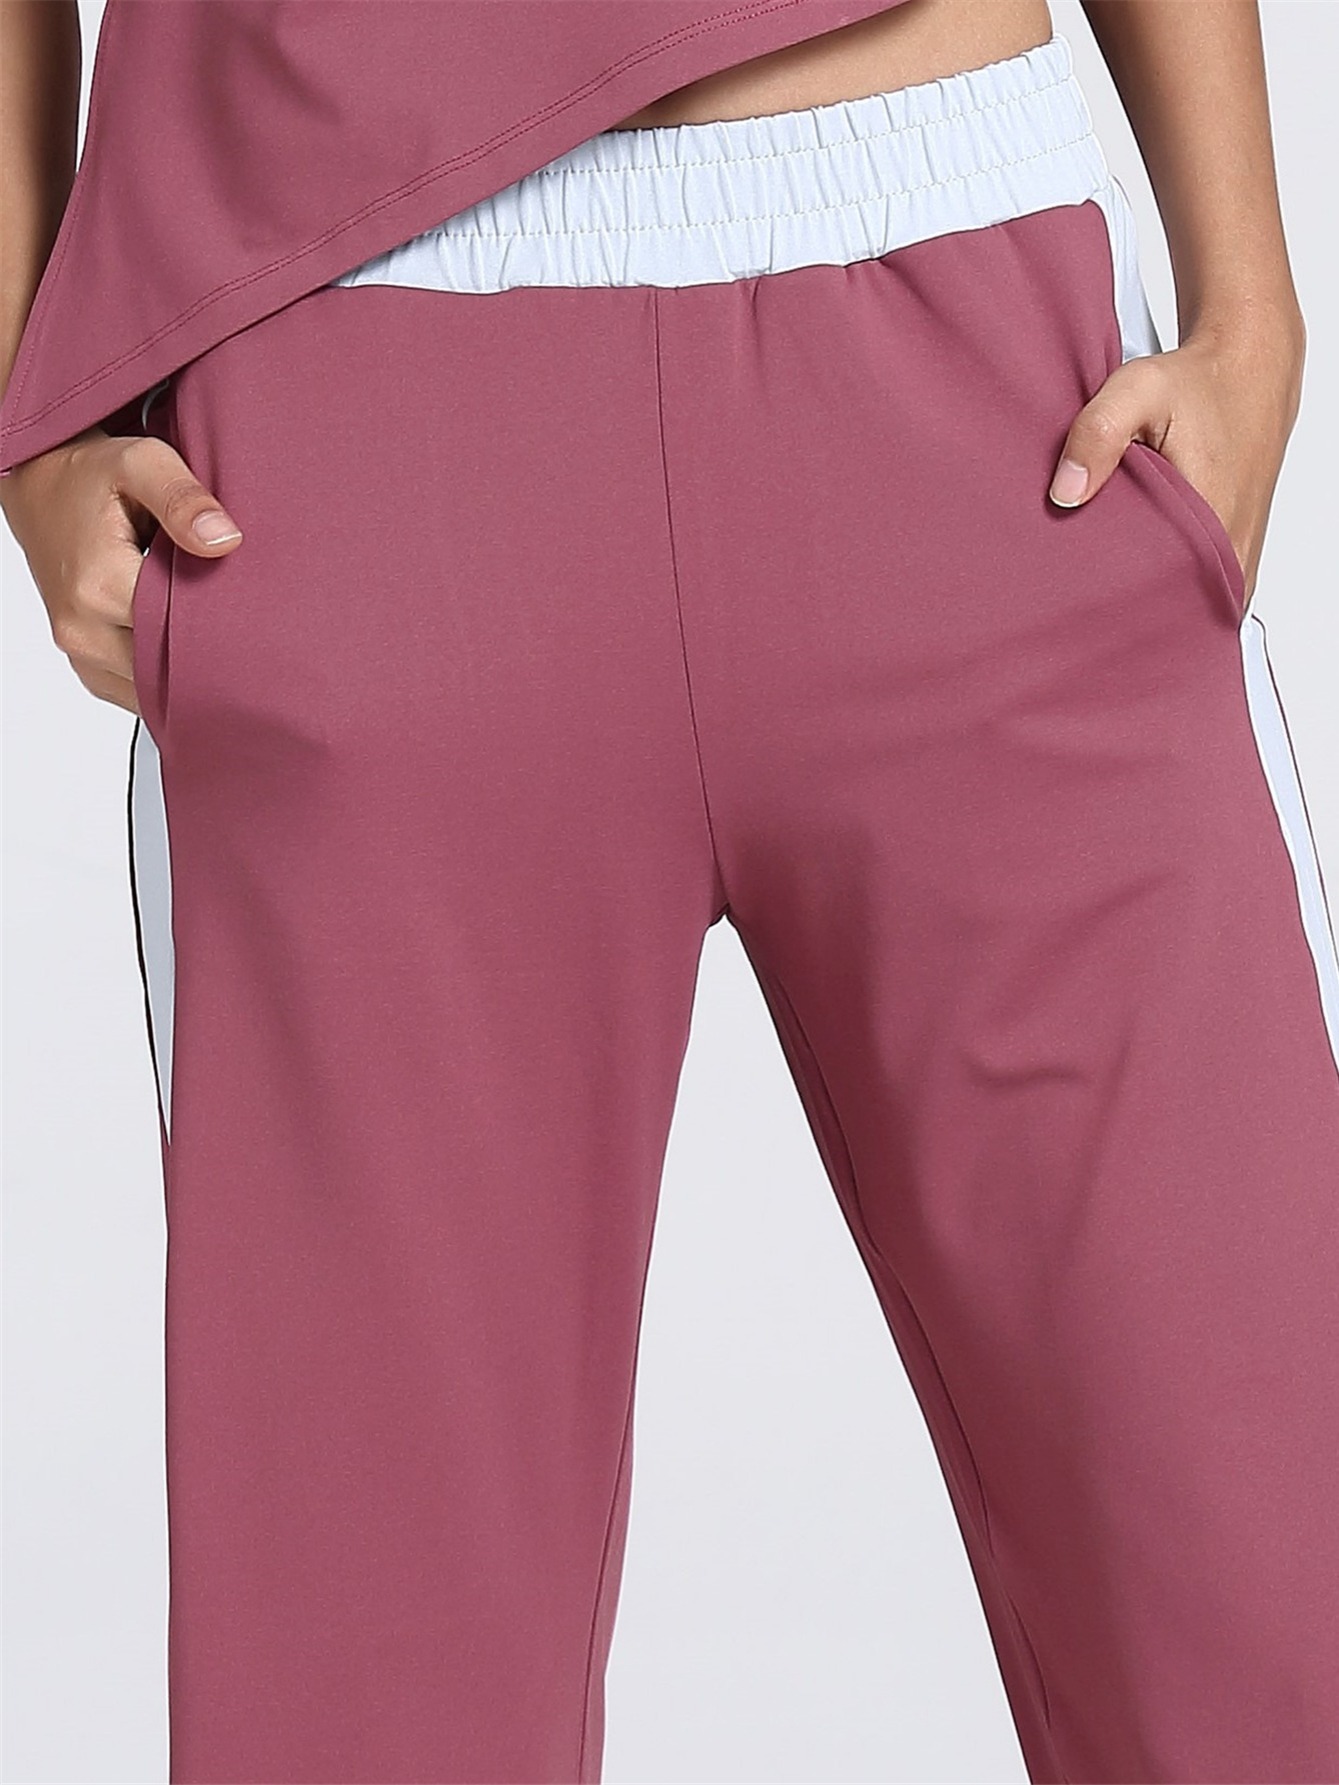 Women's Cinch Bottom Sweatpants Pockets Striped Side - Temu